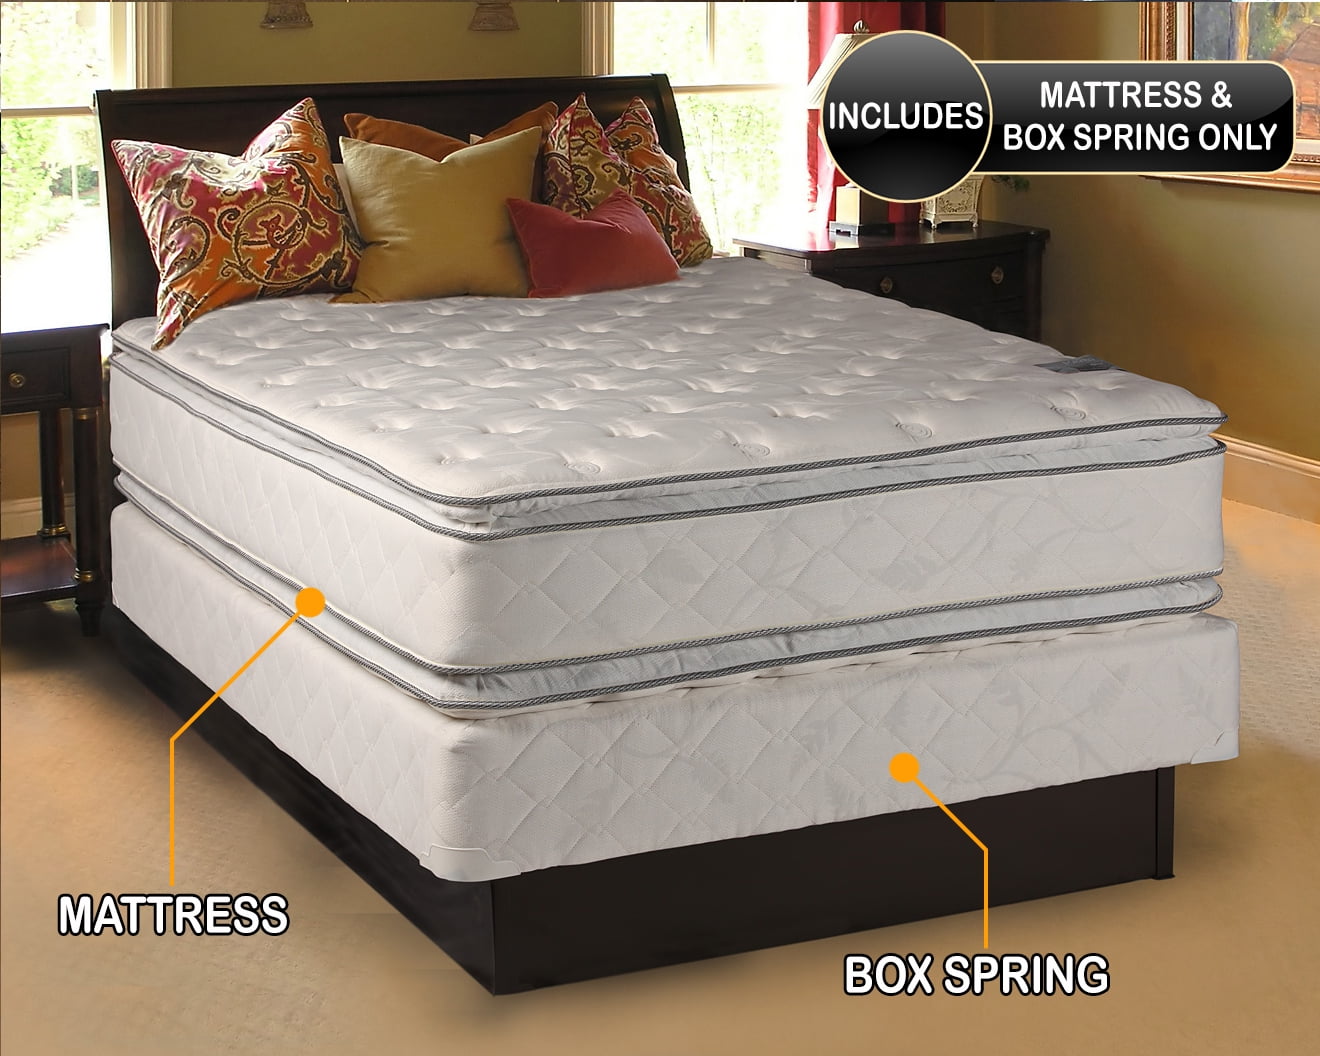 can you make a soft mattress firm